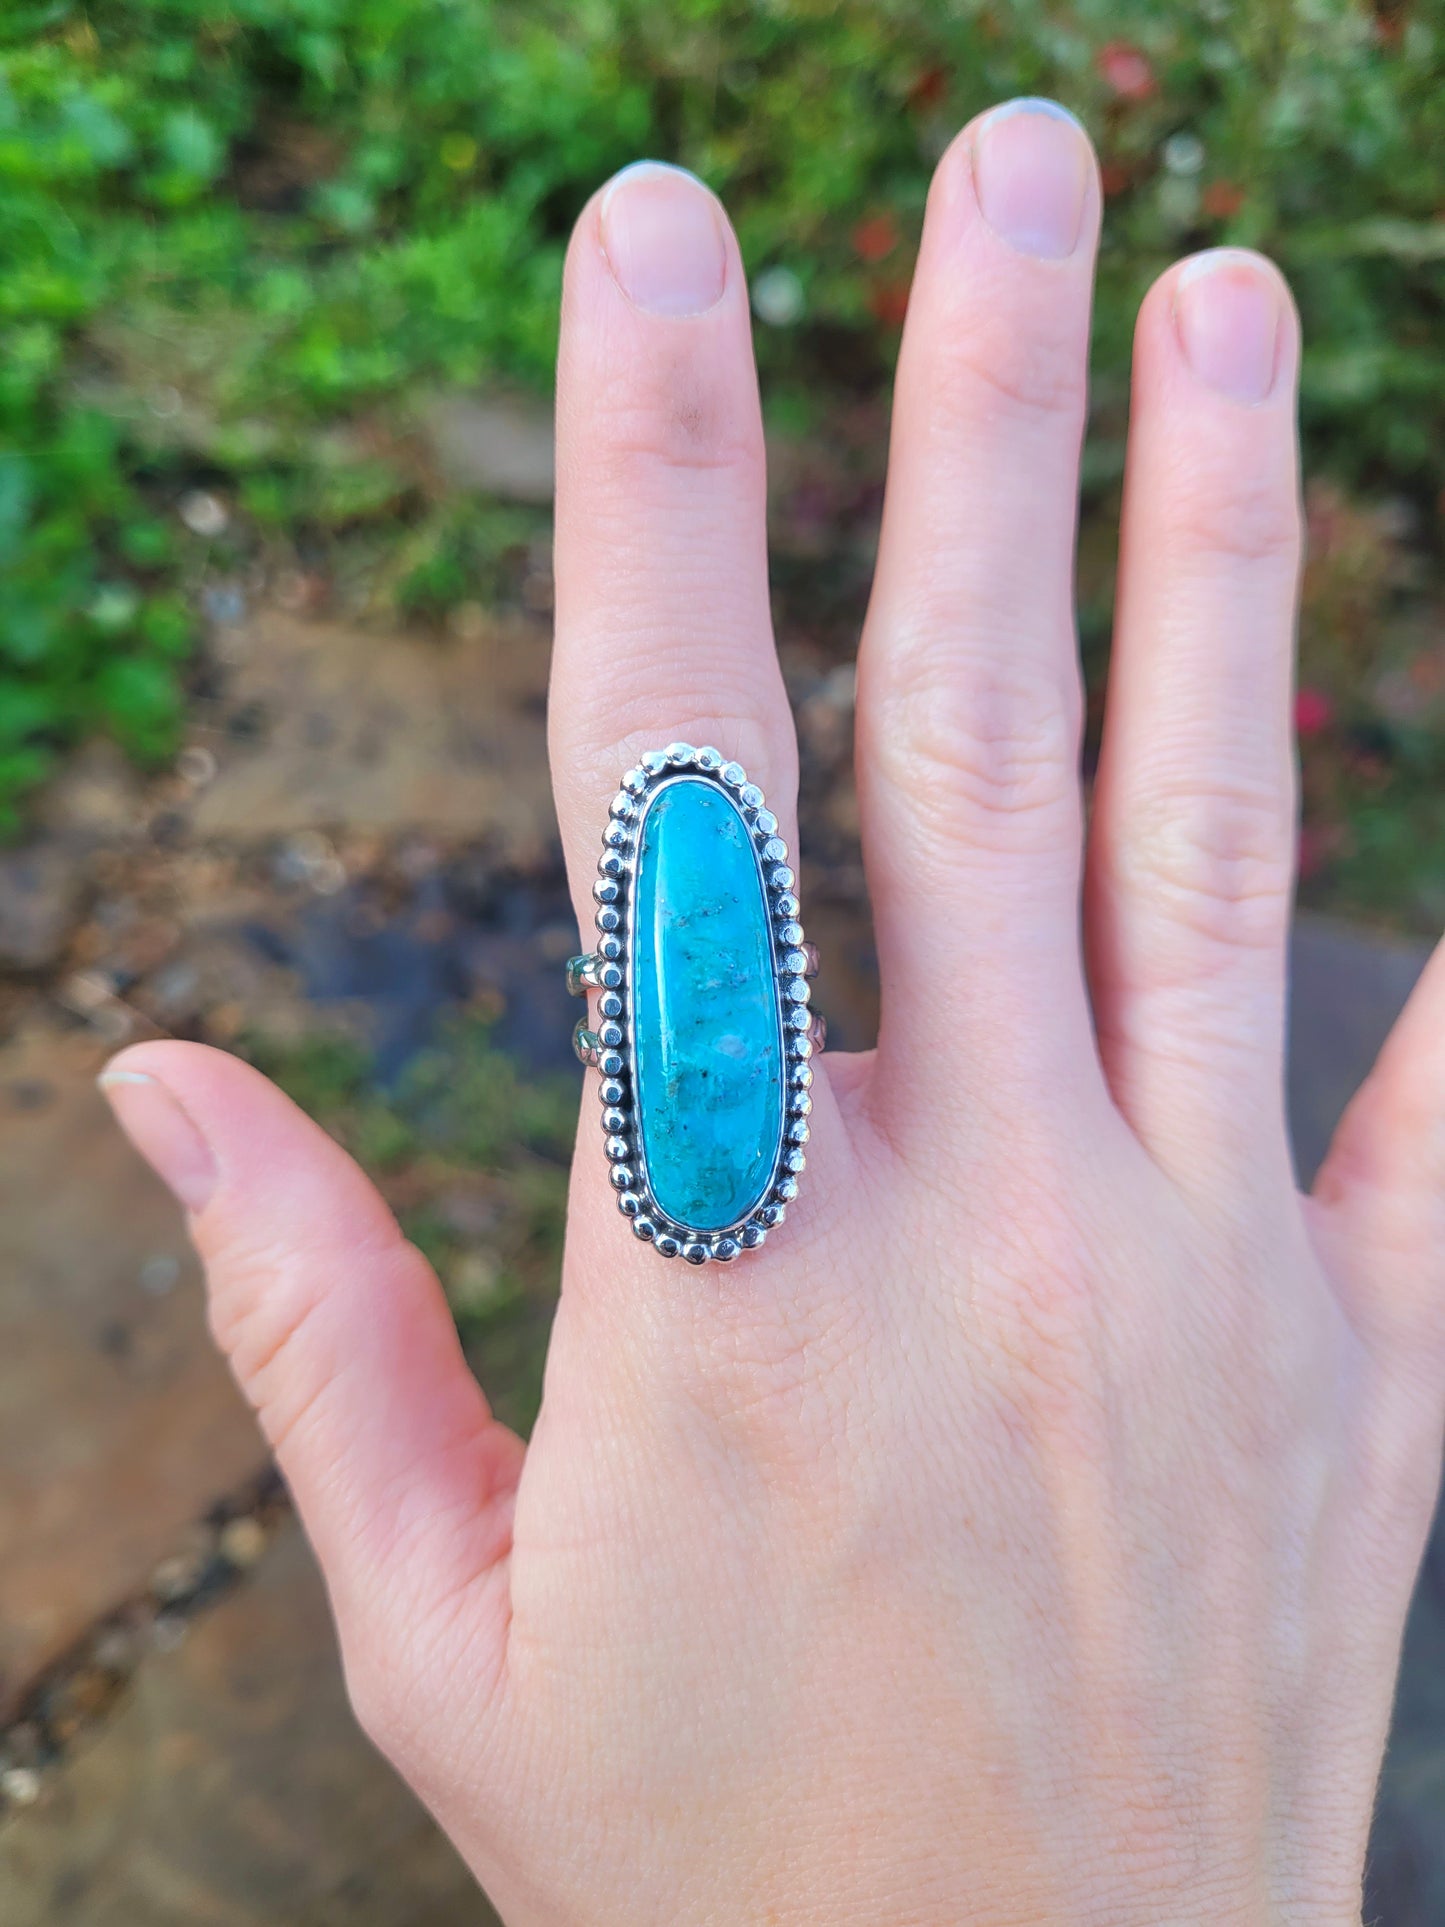 Kingman turquoise ring size 7